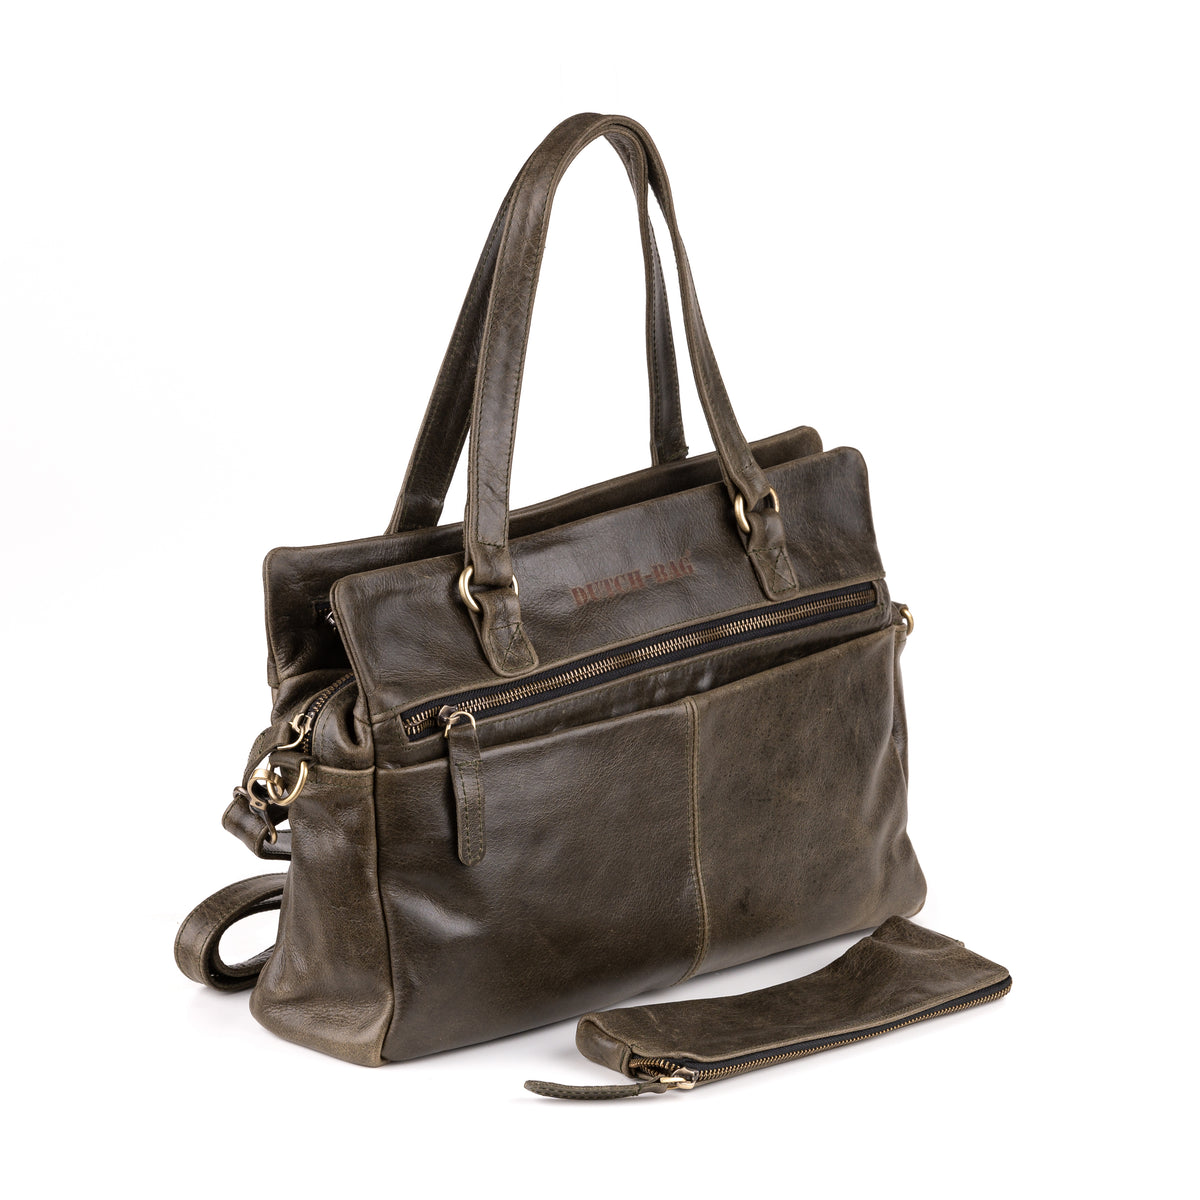 Arnhem Ladies Handbag Leather Olive - Kenya Leather